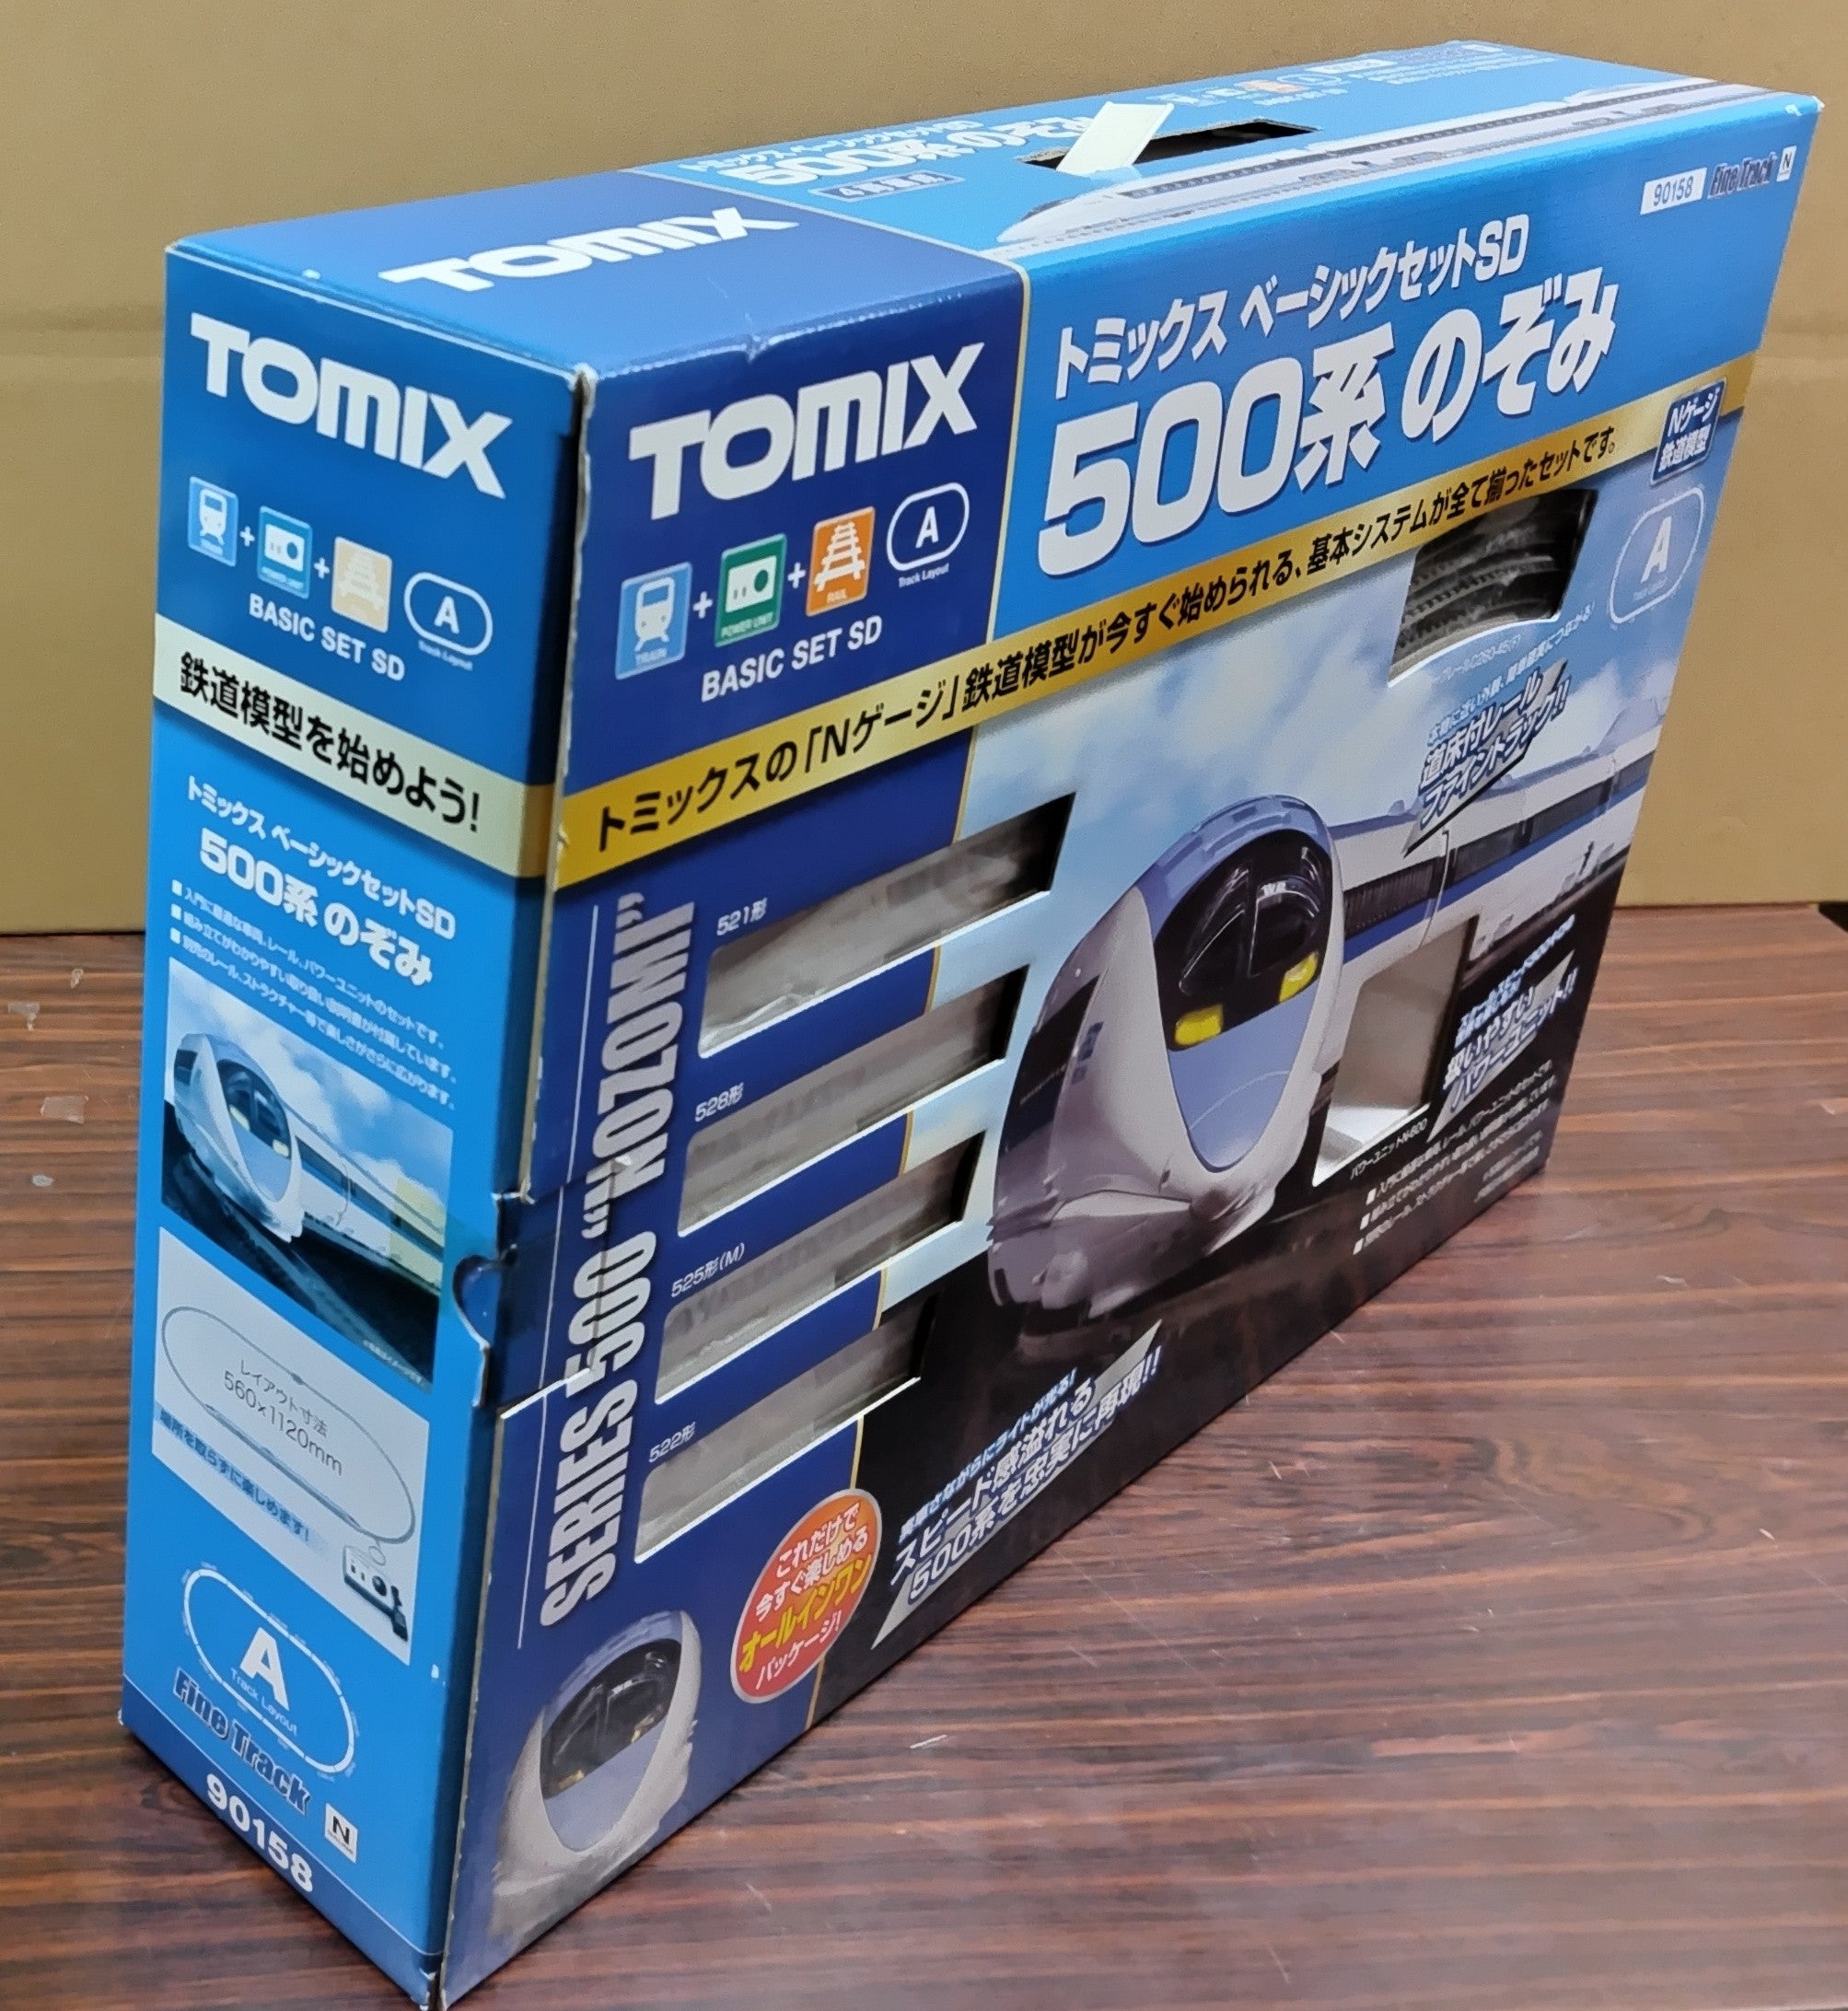 [Damaged BOX] Tomix 90158 Basic Set SD 500 Series Nozomi (Fine Track Rail Pattern A) - BanzaiHobby